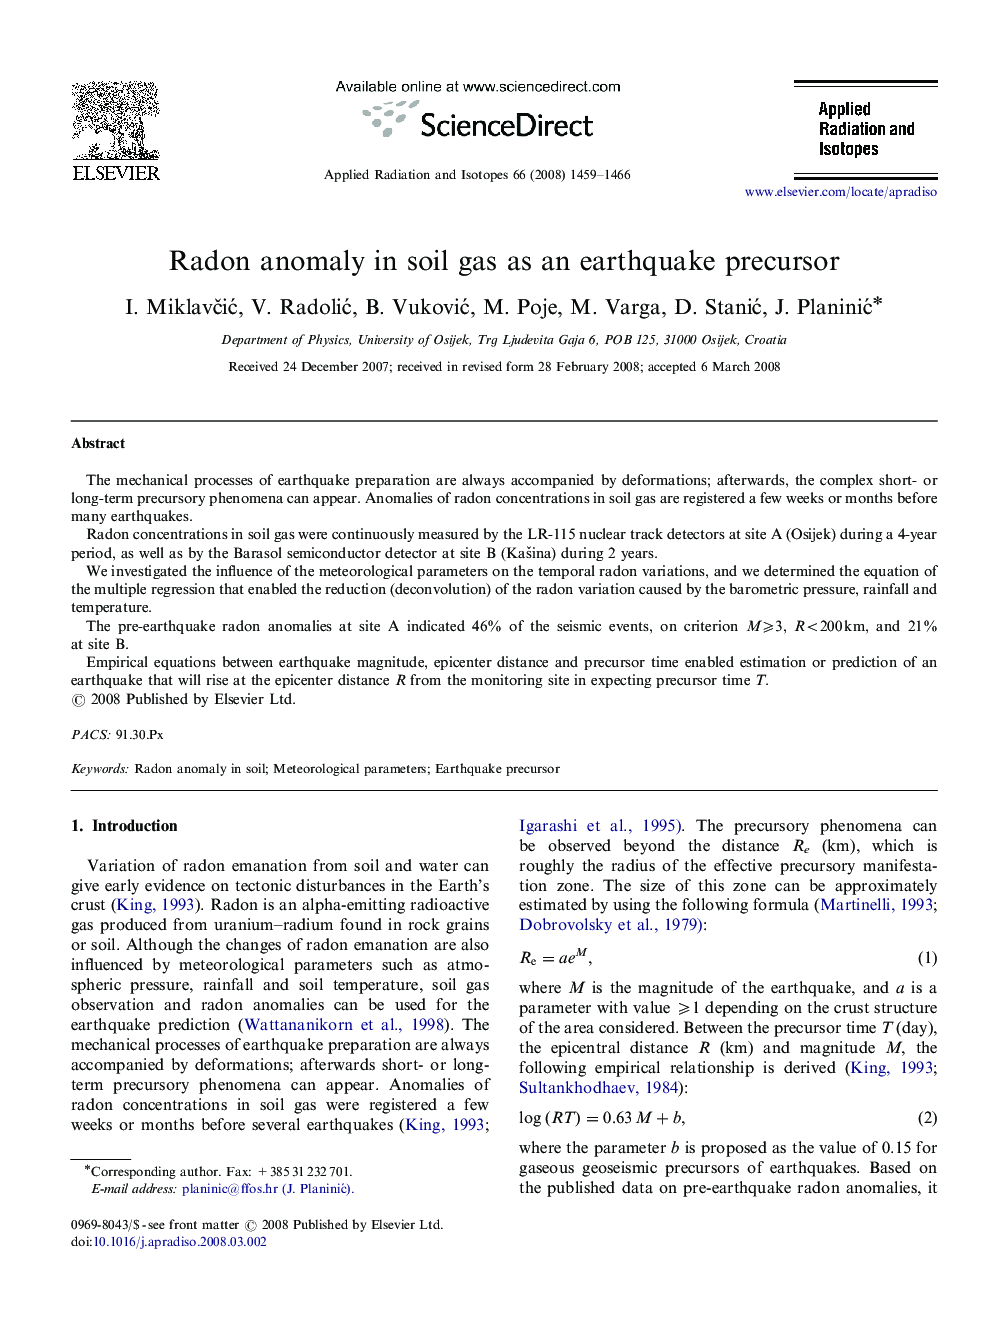 Radon anomaly in soil gas as an earthquake precursor